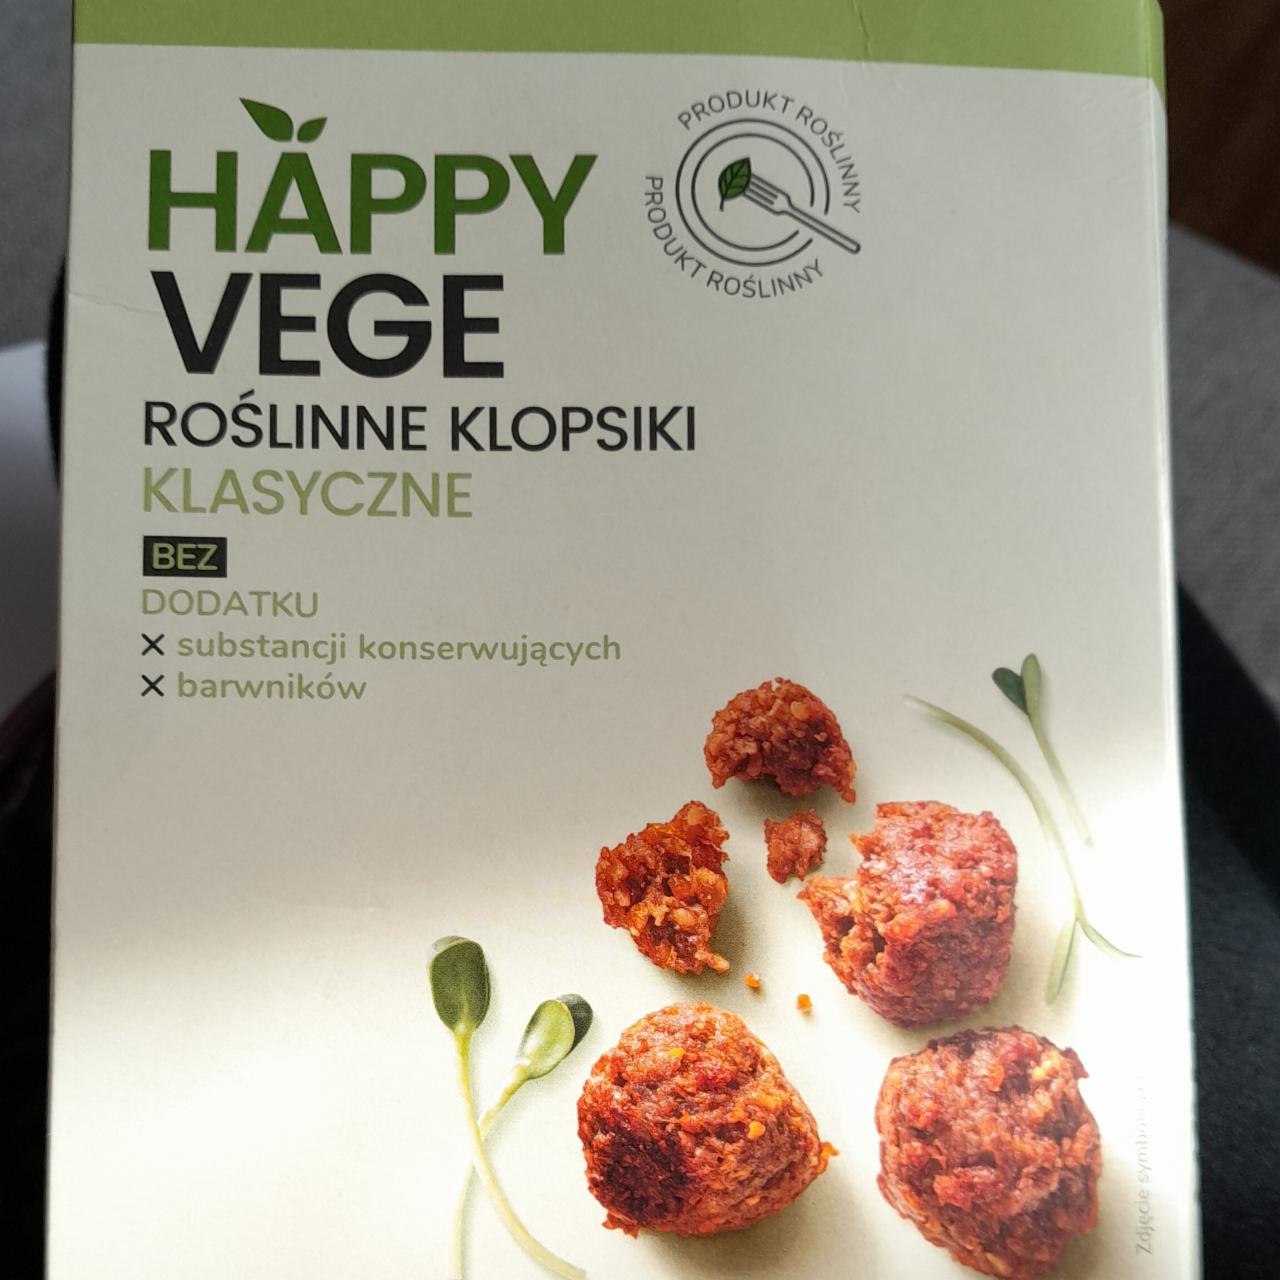 Fotografie - Roślinne klopsiki klasyczne Happy Vege